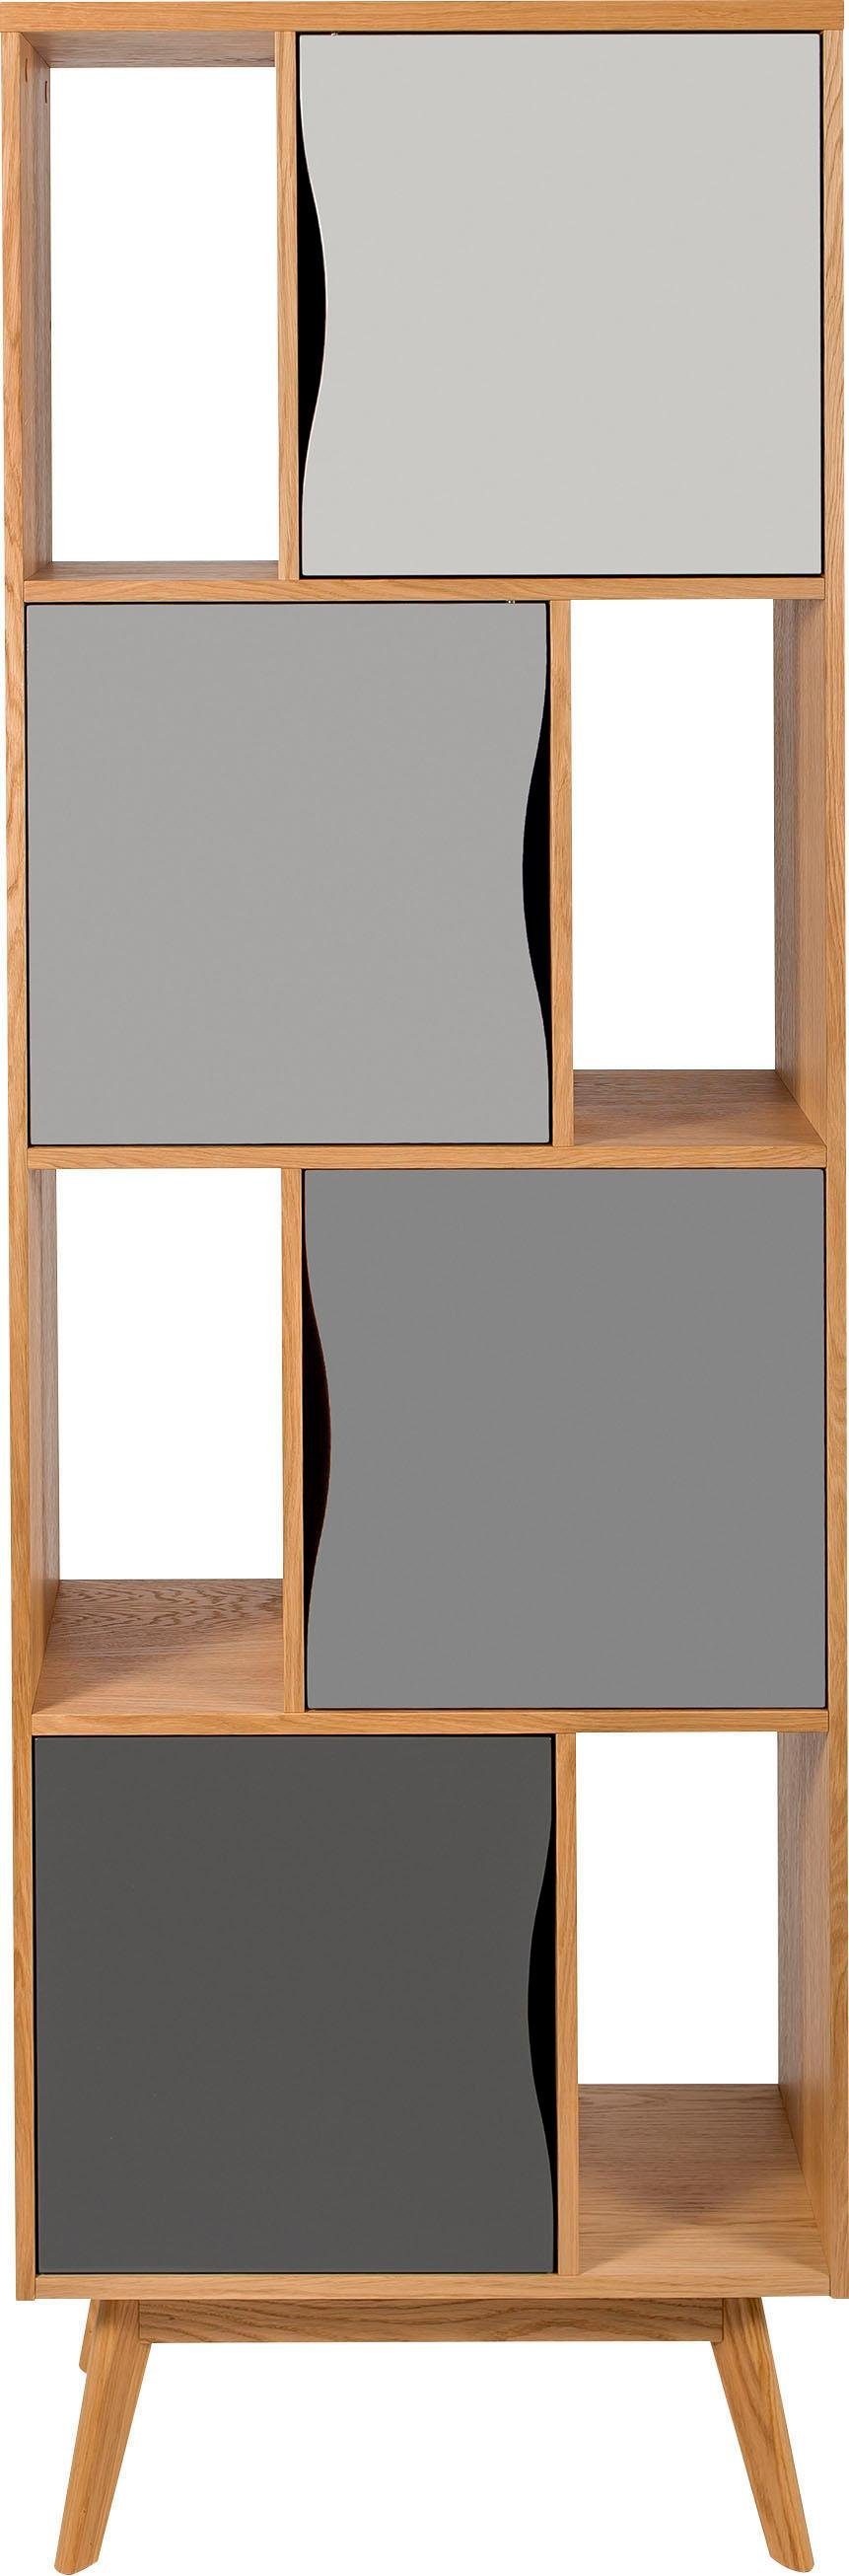 Woodman Bücherregal Avon, Höhe 191 cm, Holzfurnier aus Eiche, schlichtes skandinavisches Design eiche/grau